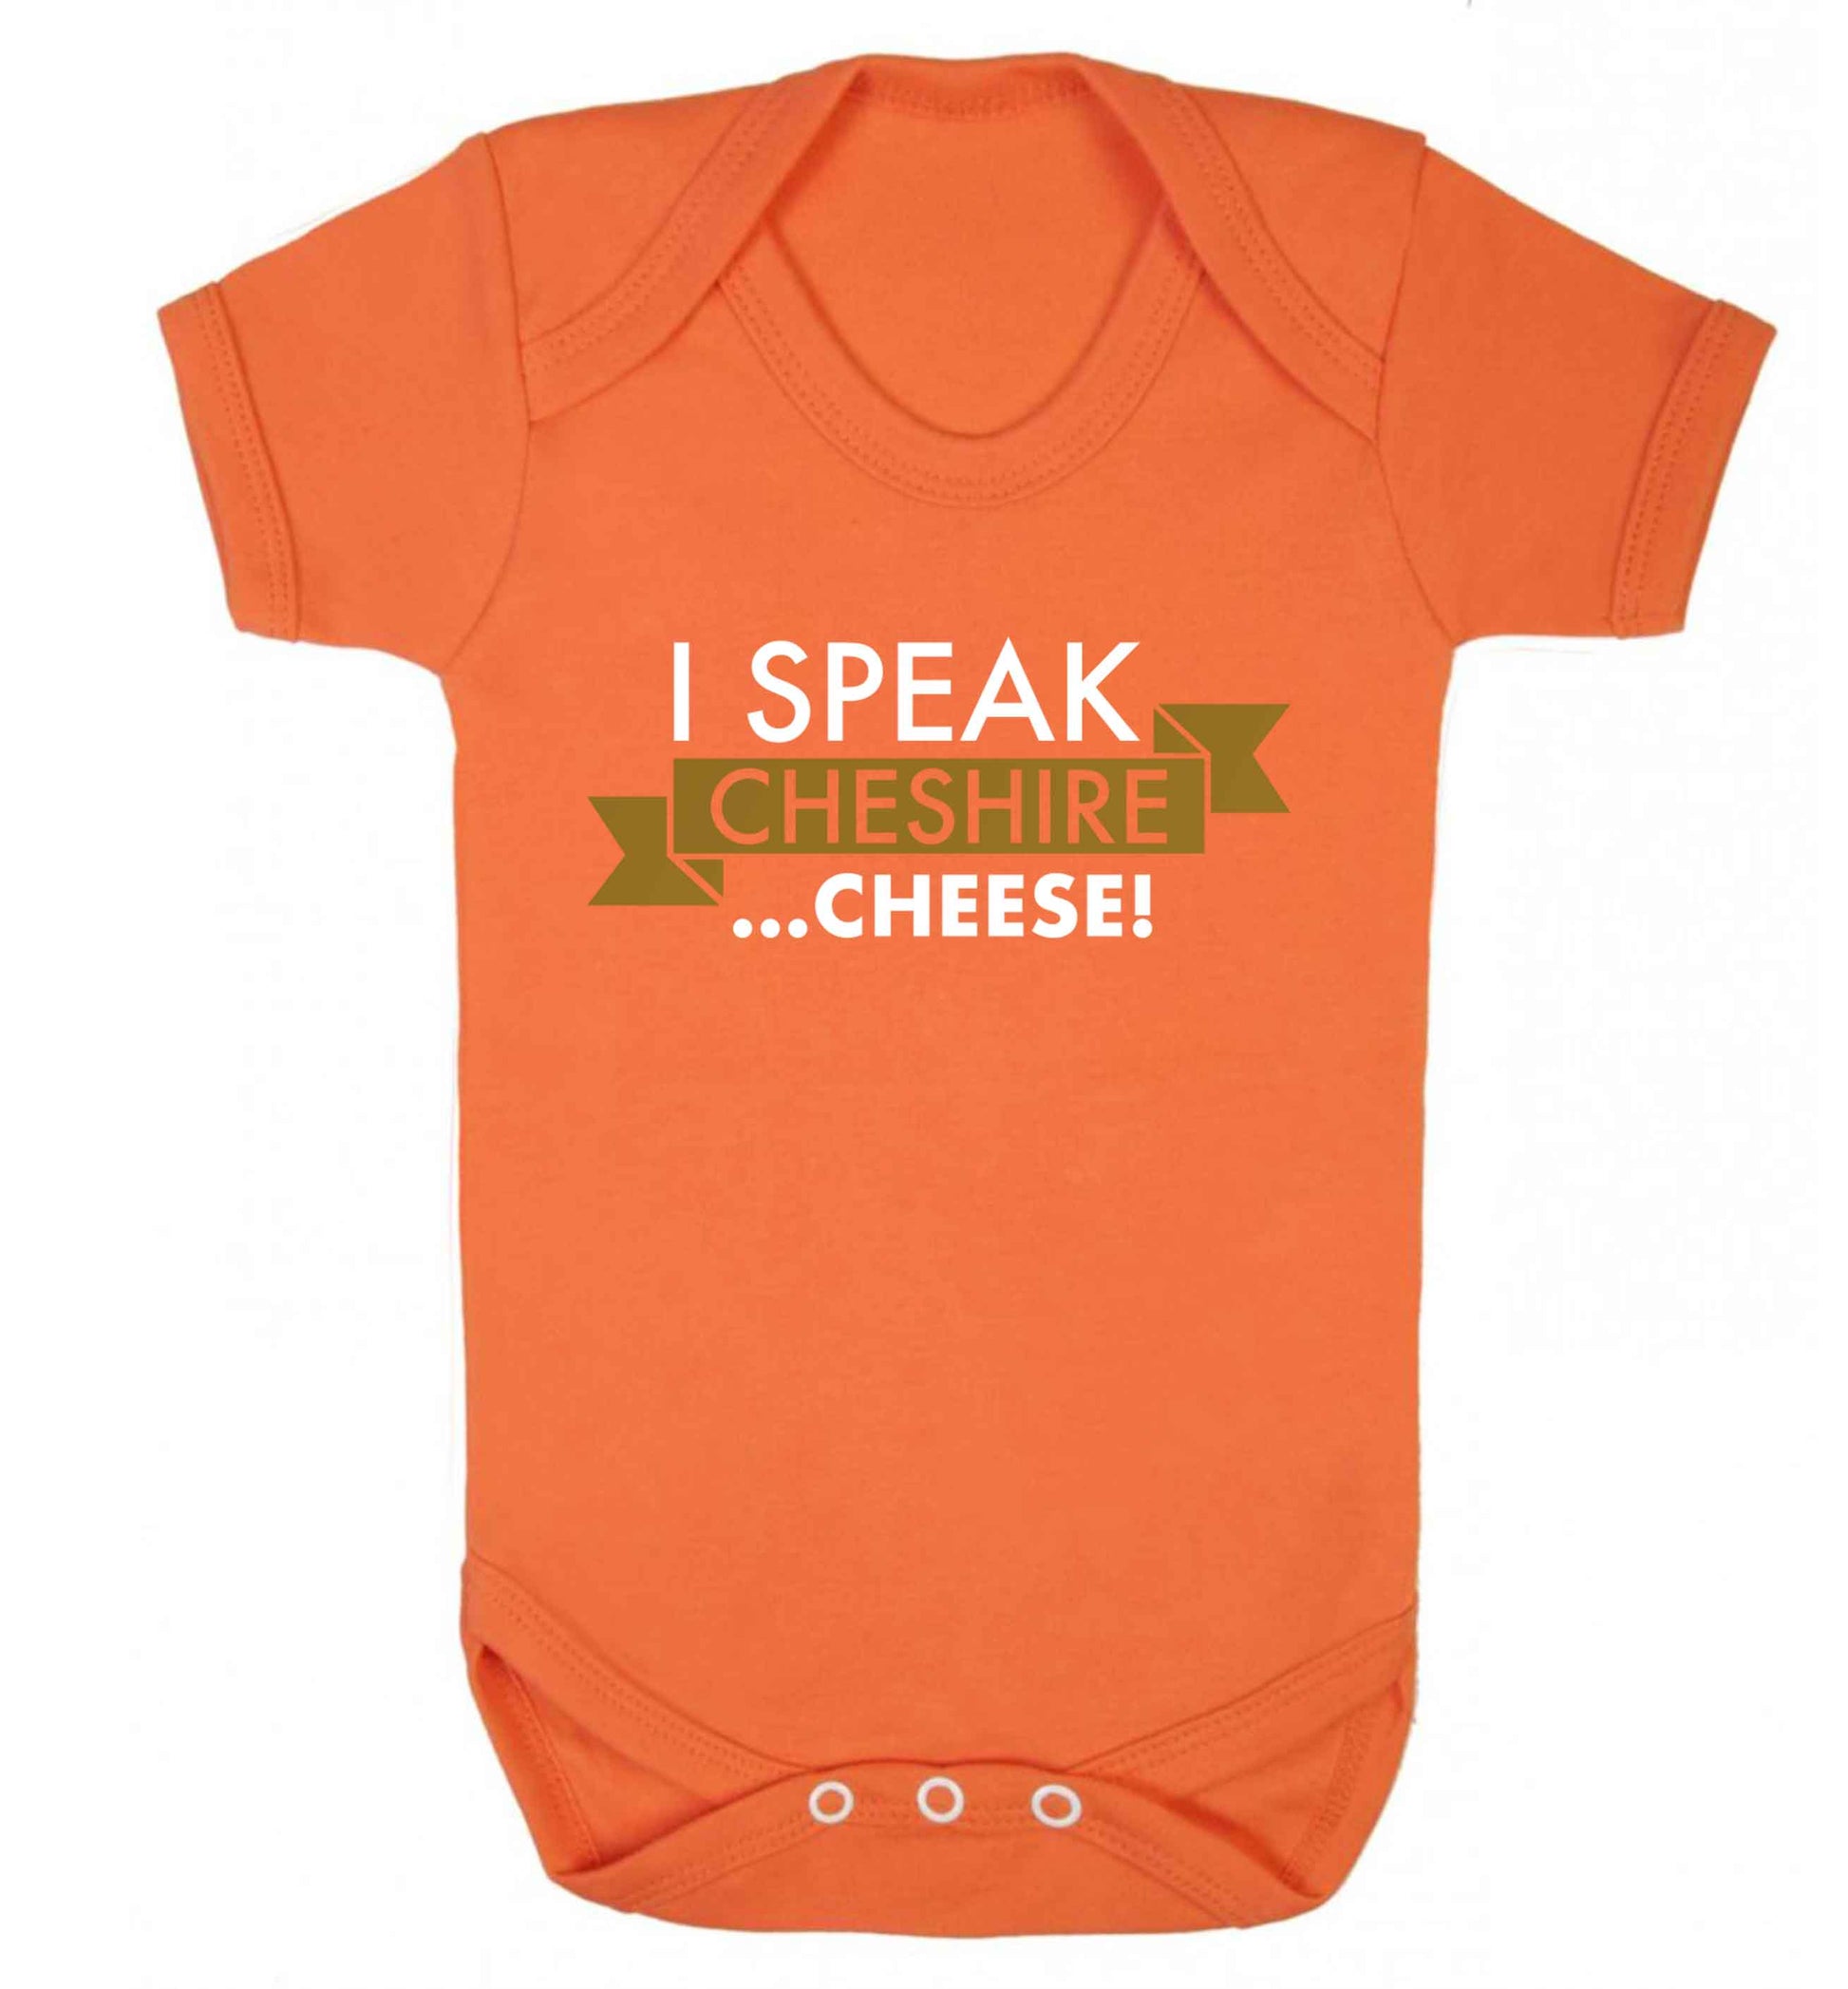 I speak Cheshire cheese Baby Vest orange 18-24 months